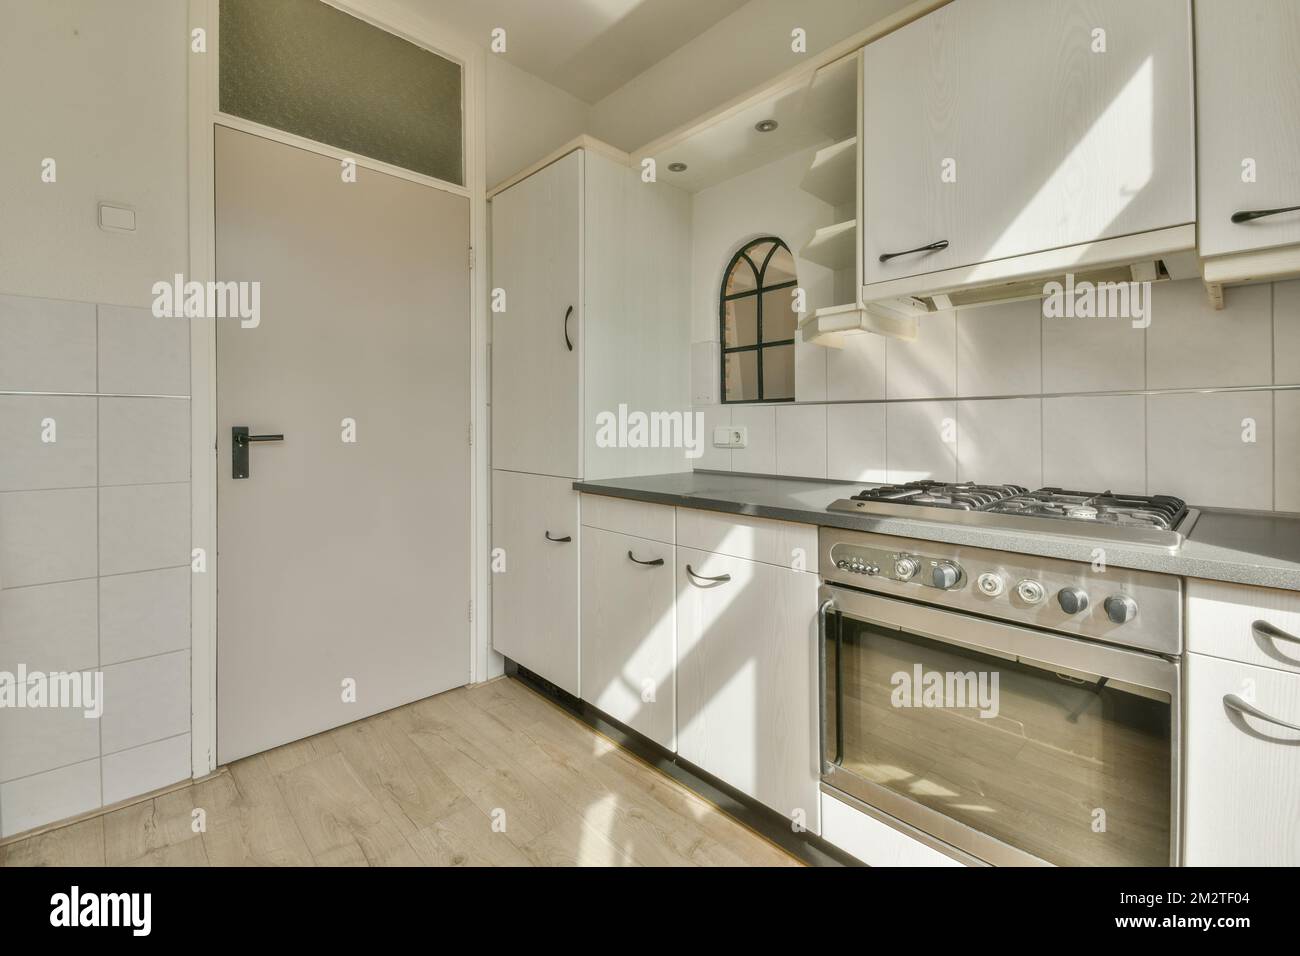 Décoration intérieure d'appartement loft moderne avec cuisine ouverte dans un style minimaliste et spacieuse salle à manger avec table et chaises Banque D'Images